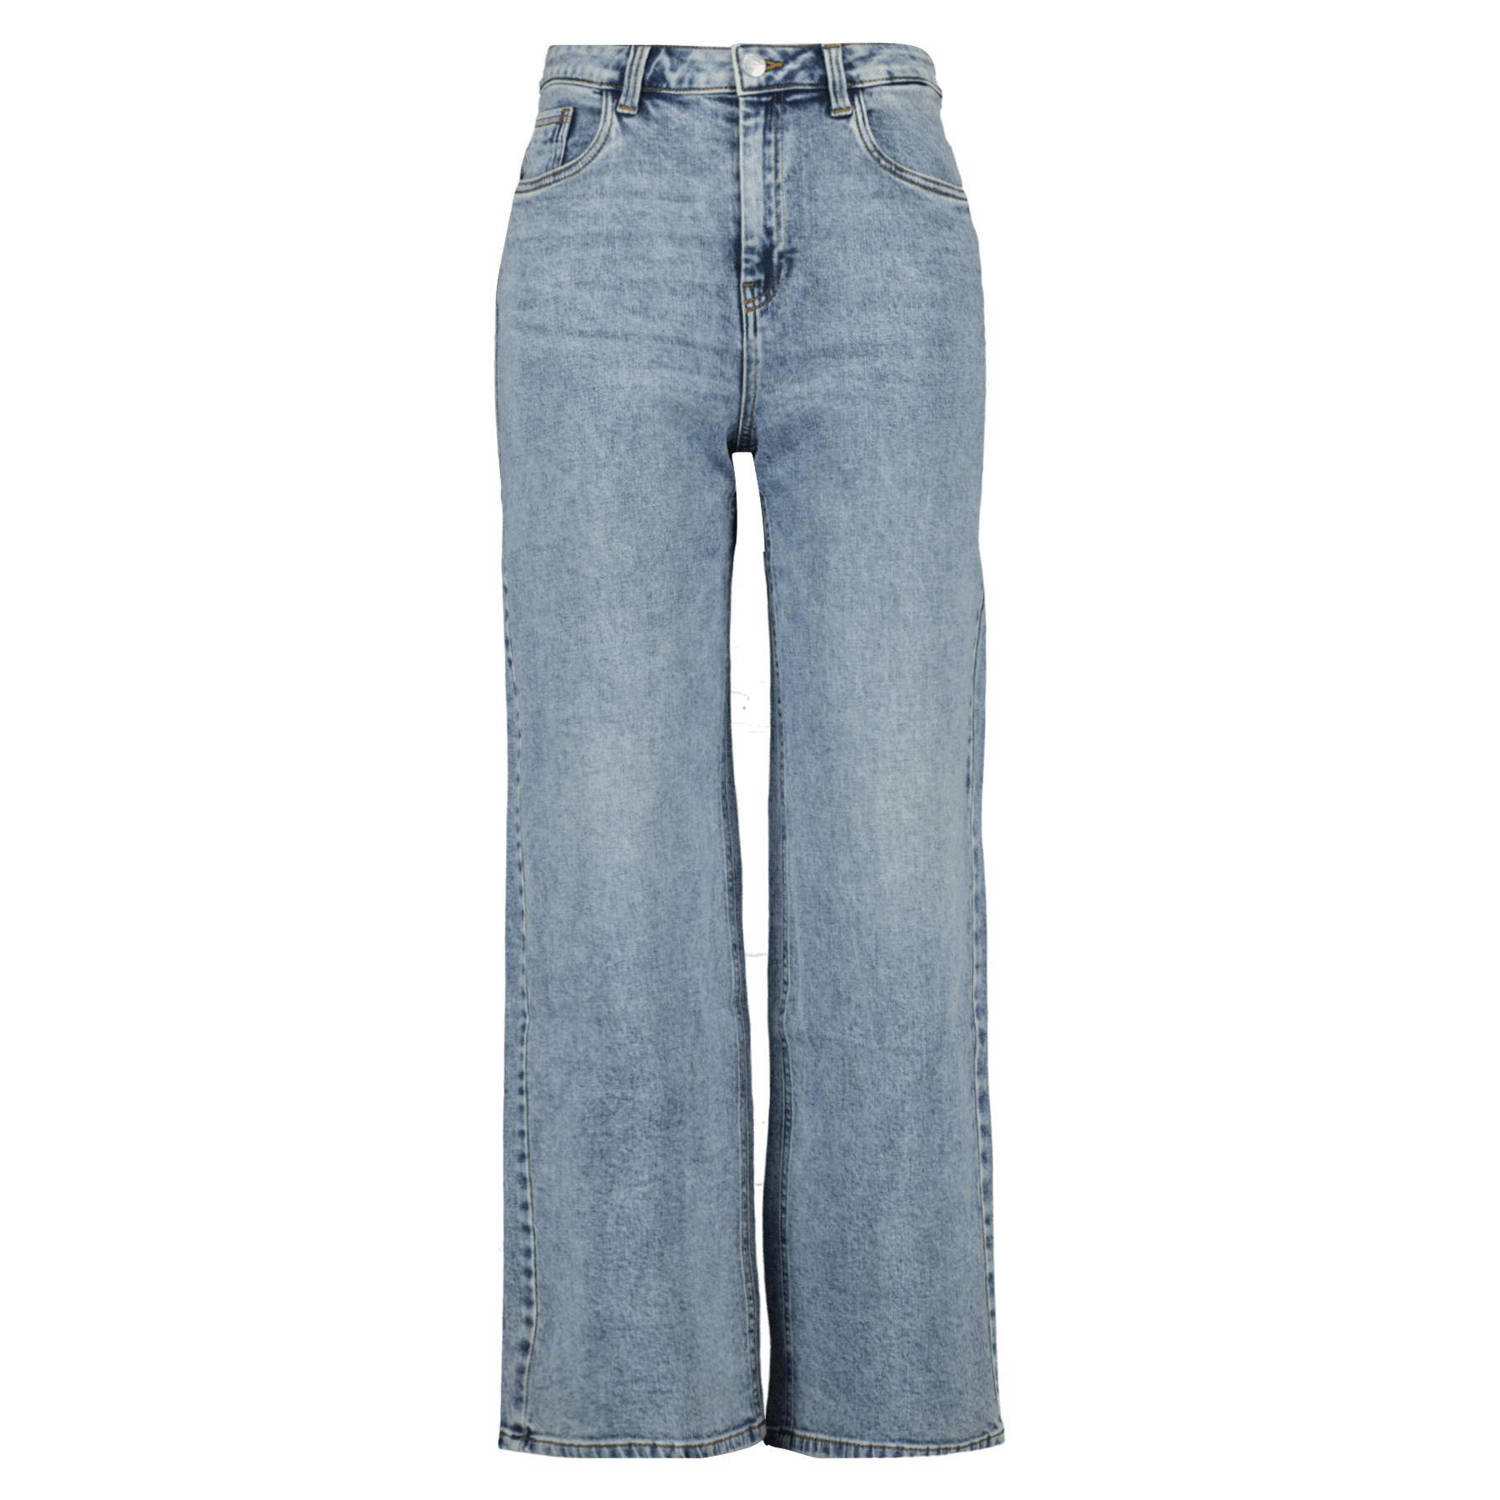 MS Mode high waist jeans light blue denim